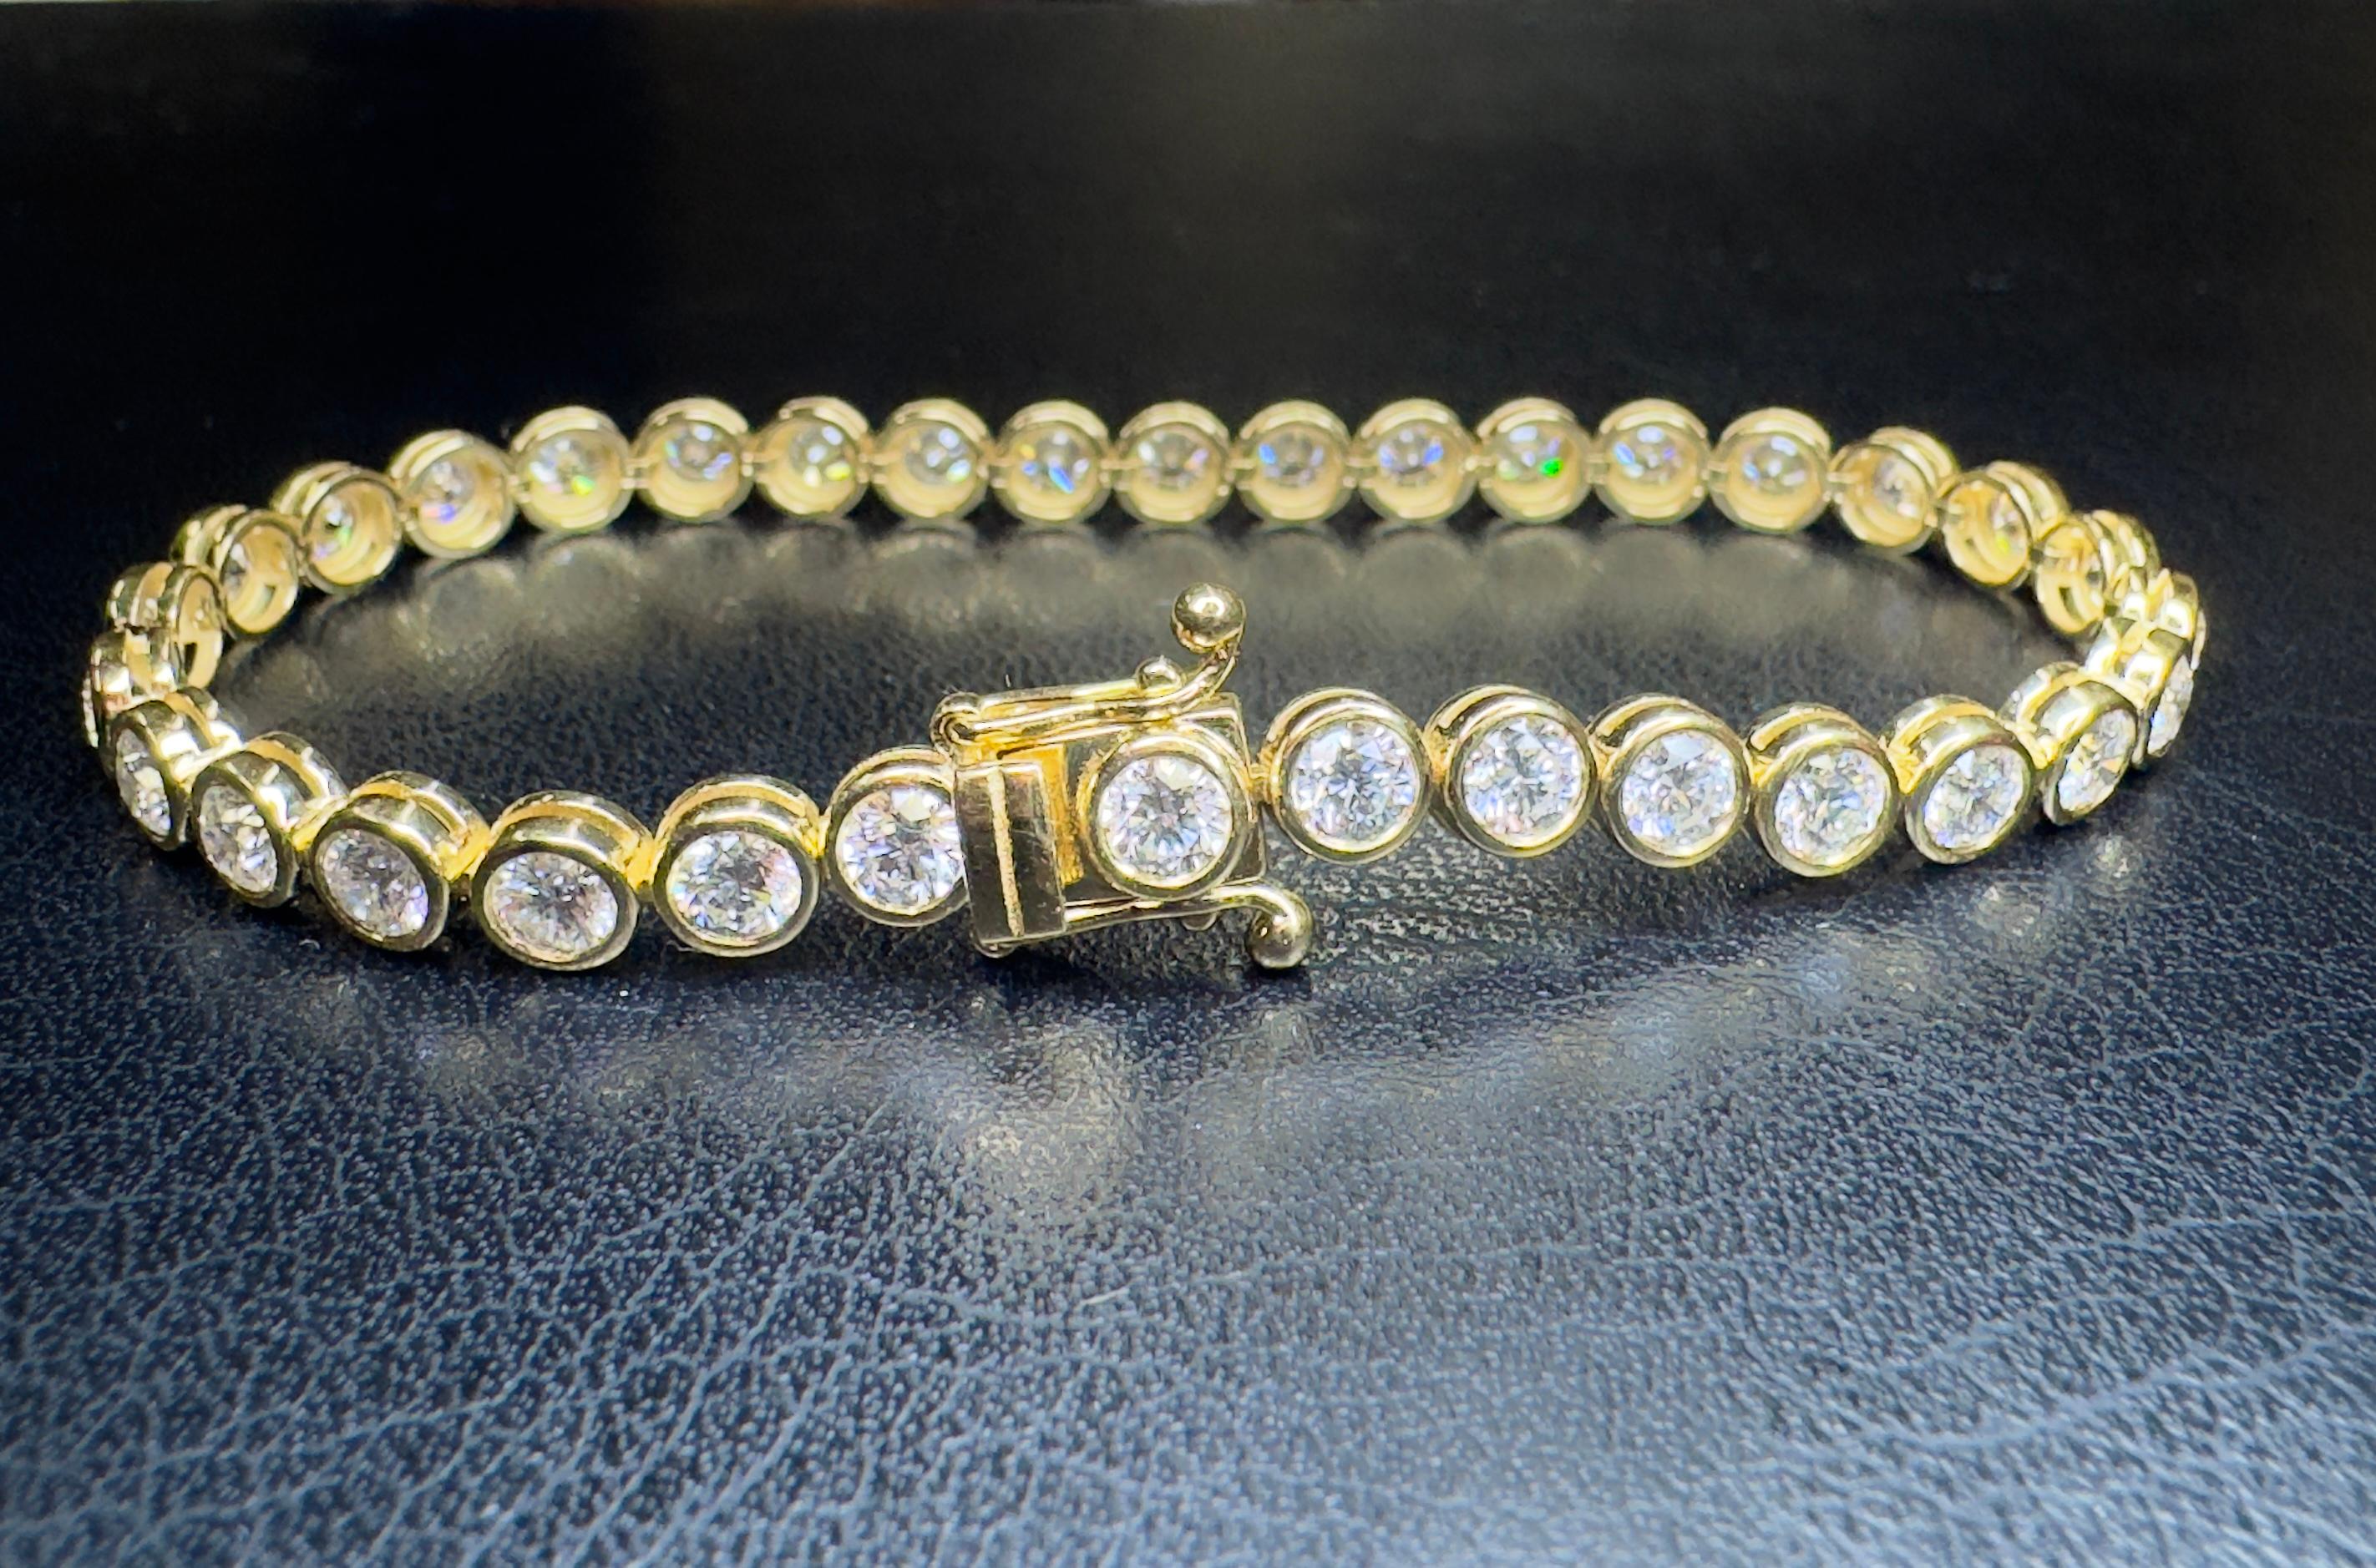 Elegantes Tennisarmband aus natürlichen Diamanten mit 34 runden Brillanten von 5,40 Karat. DEF Farbe und VS1-SI1 Reinheit. Lünette aus 18 Karat Gelbgold mit einem doppelt gesicherten Verschluss. Das Armband ist 6,75 cm lang und wiegt insgesamt 11,4